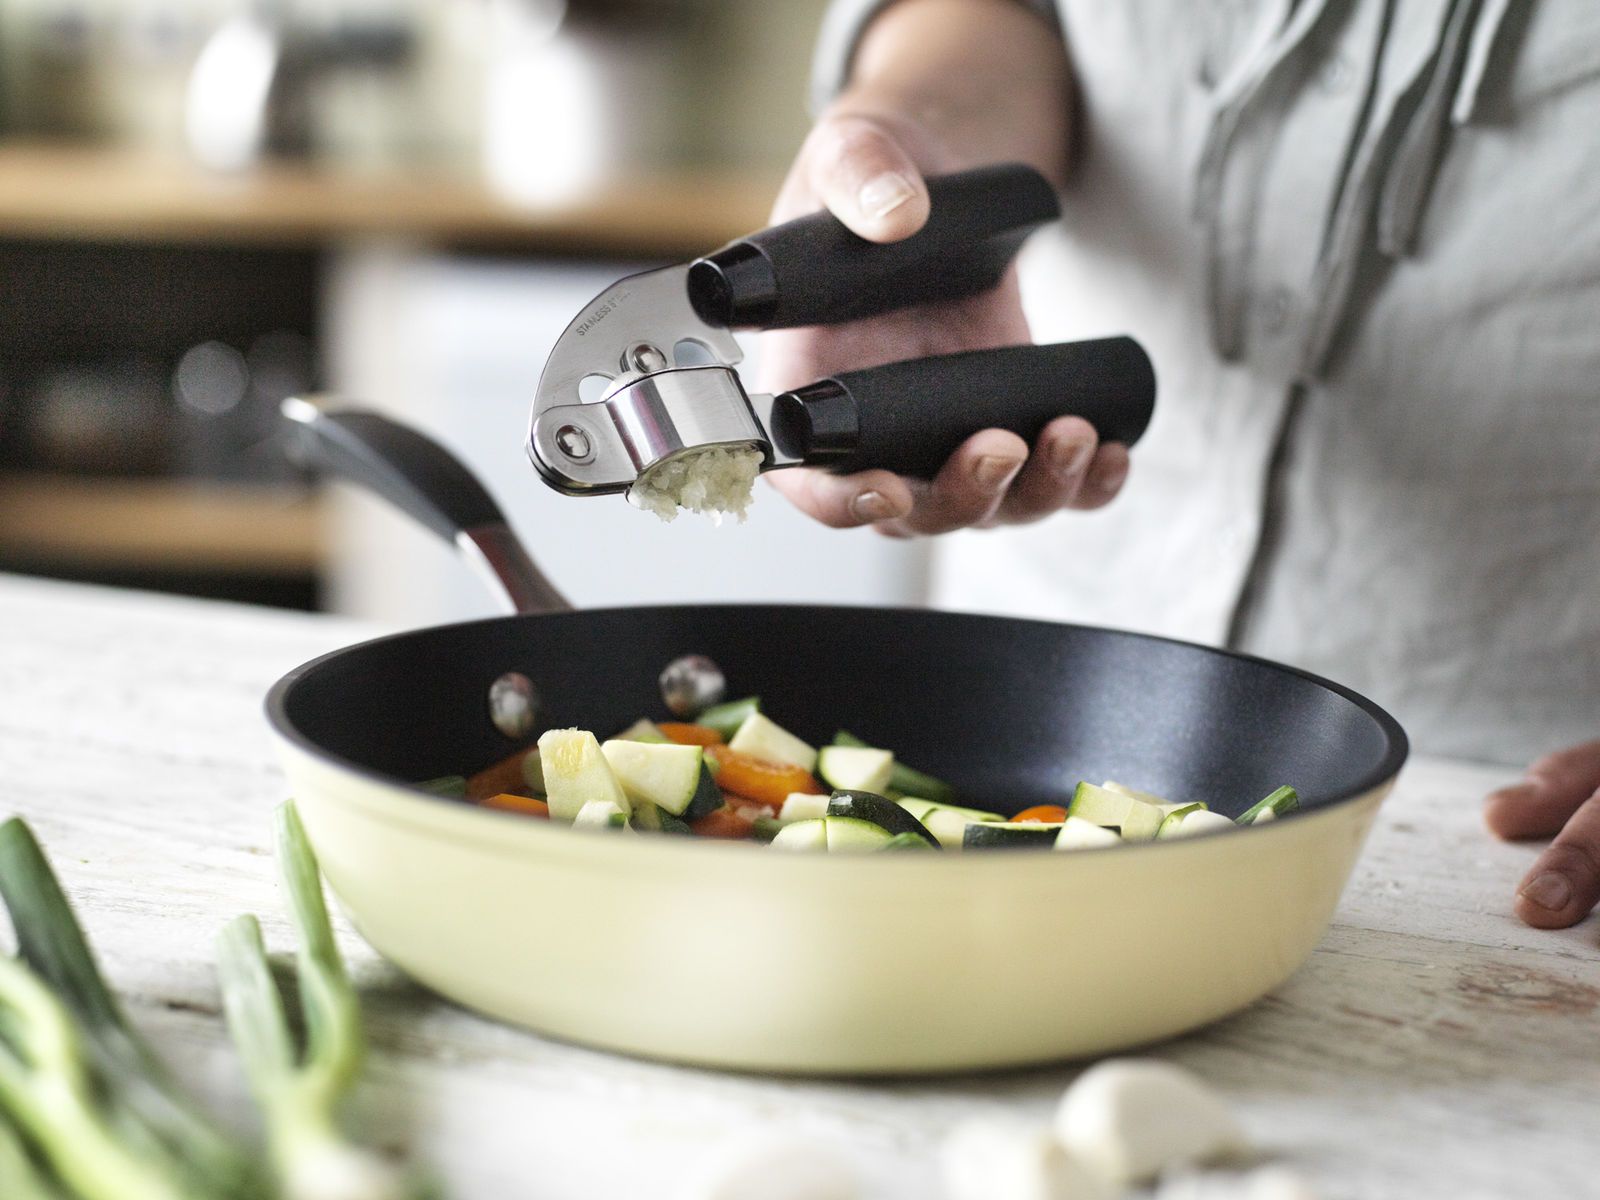 Stellar Sure Grip Garlic Press Kitchen & Home Cooking Dining Utensils